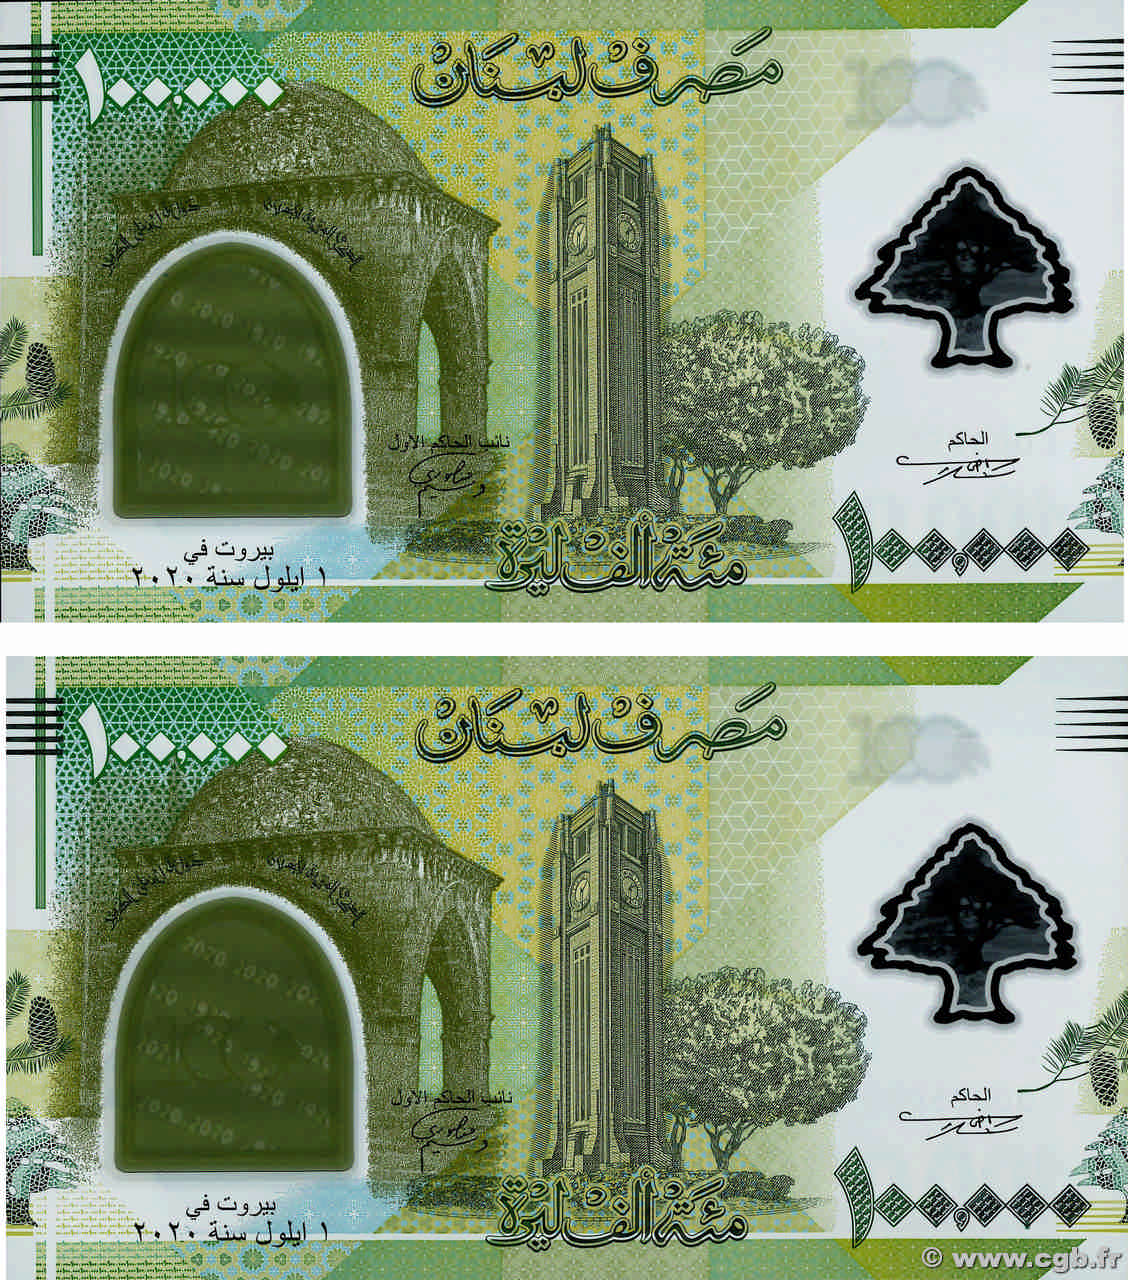 100000 Livres Consécutifs LIBANON  2020 P.099 ST